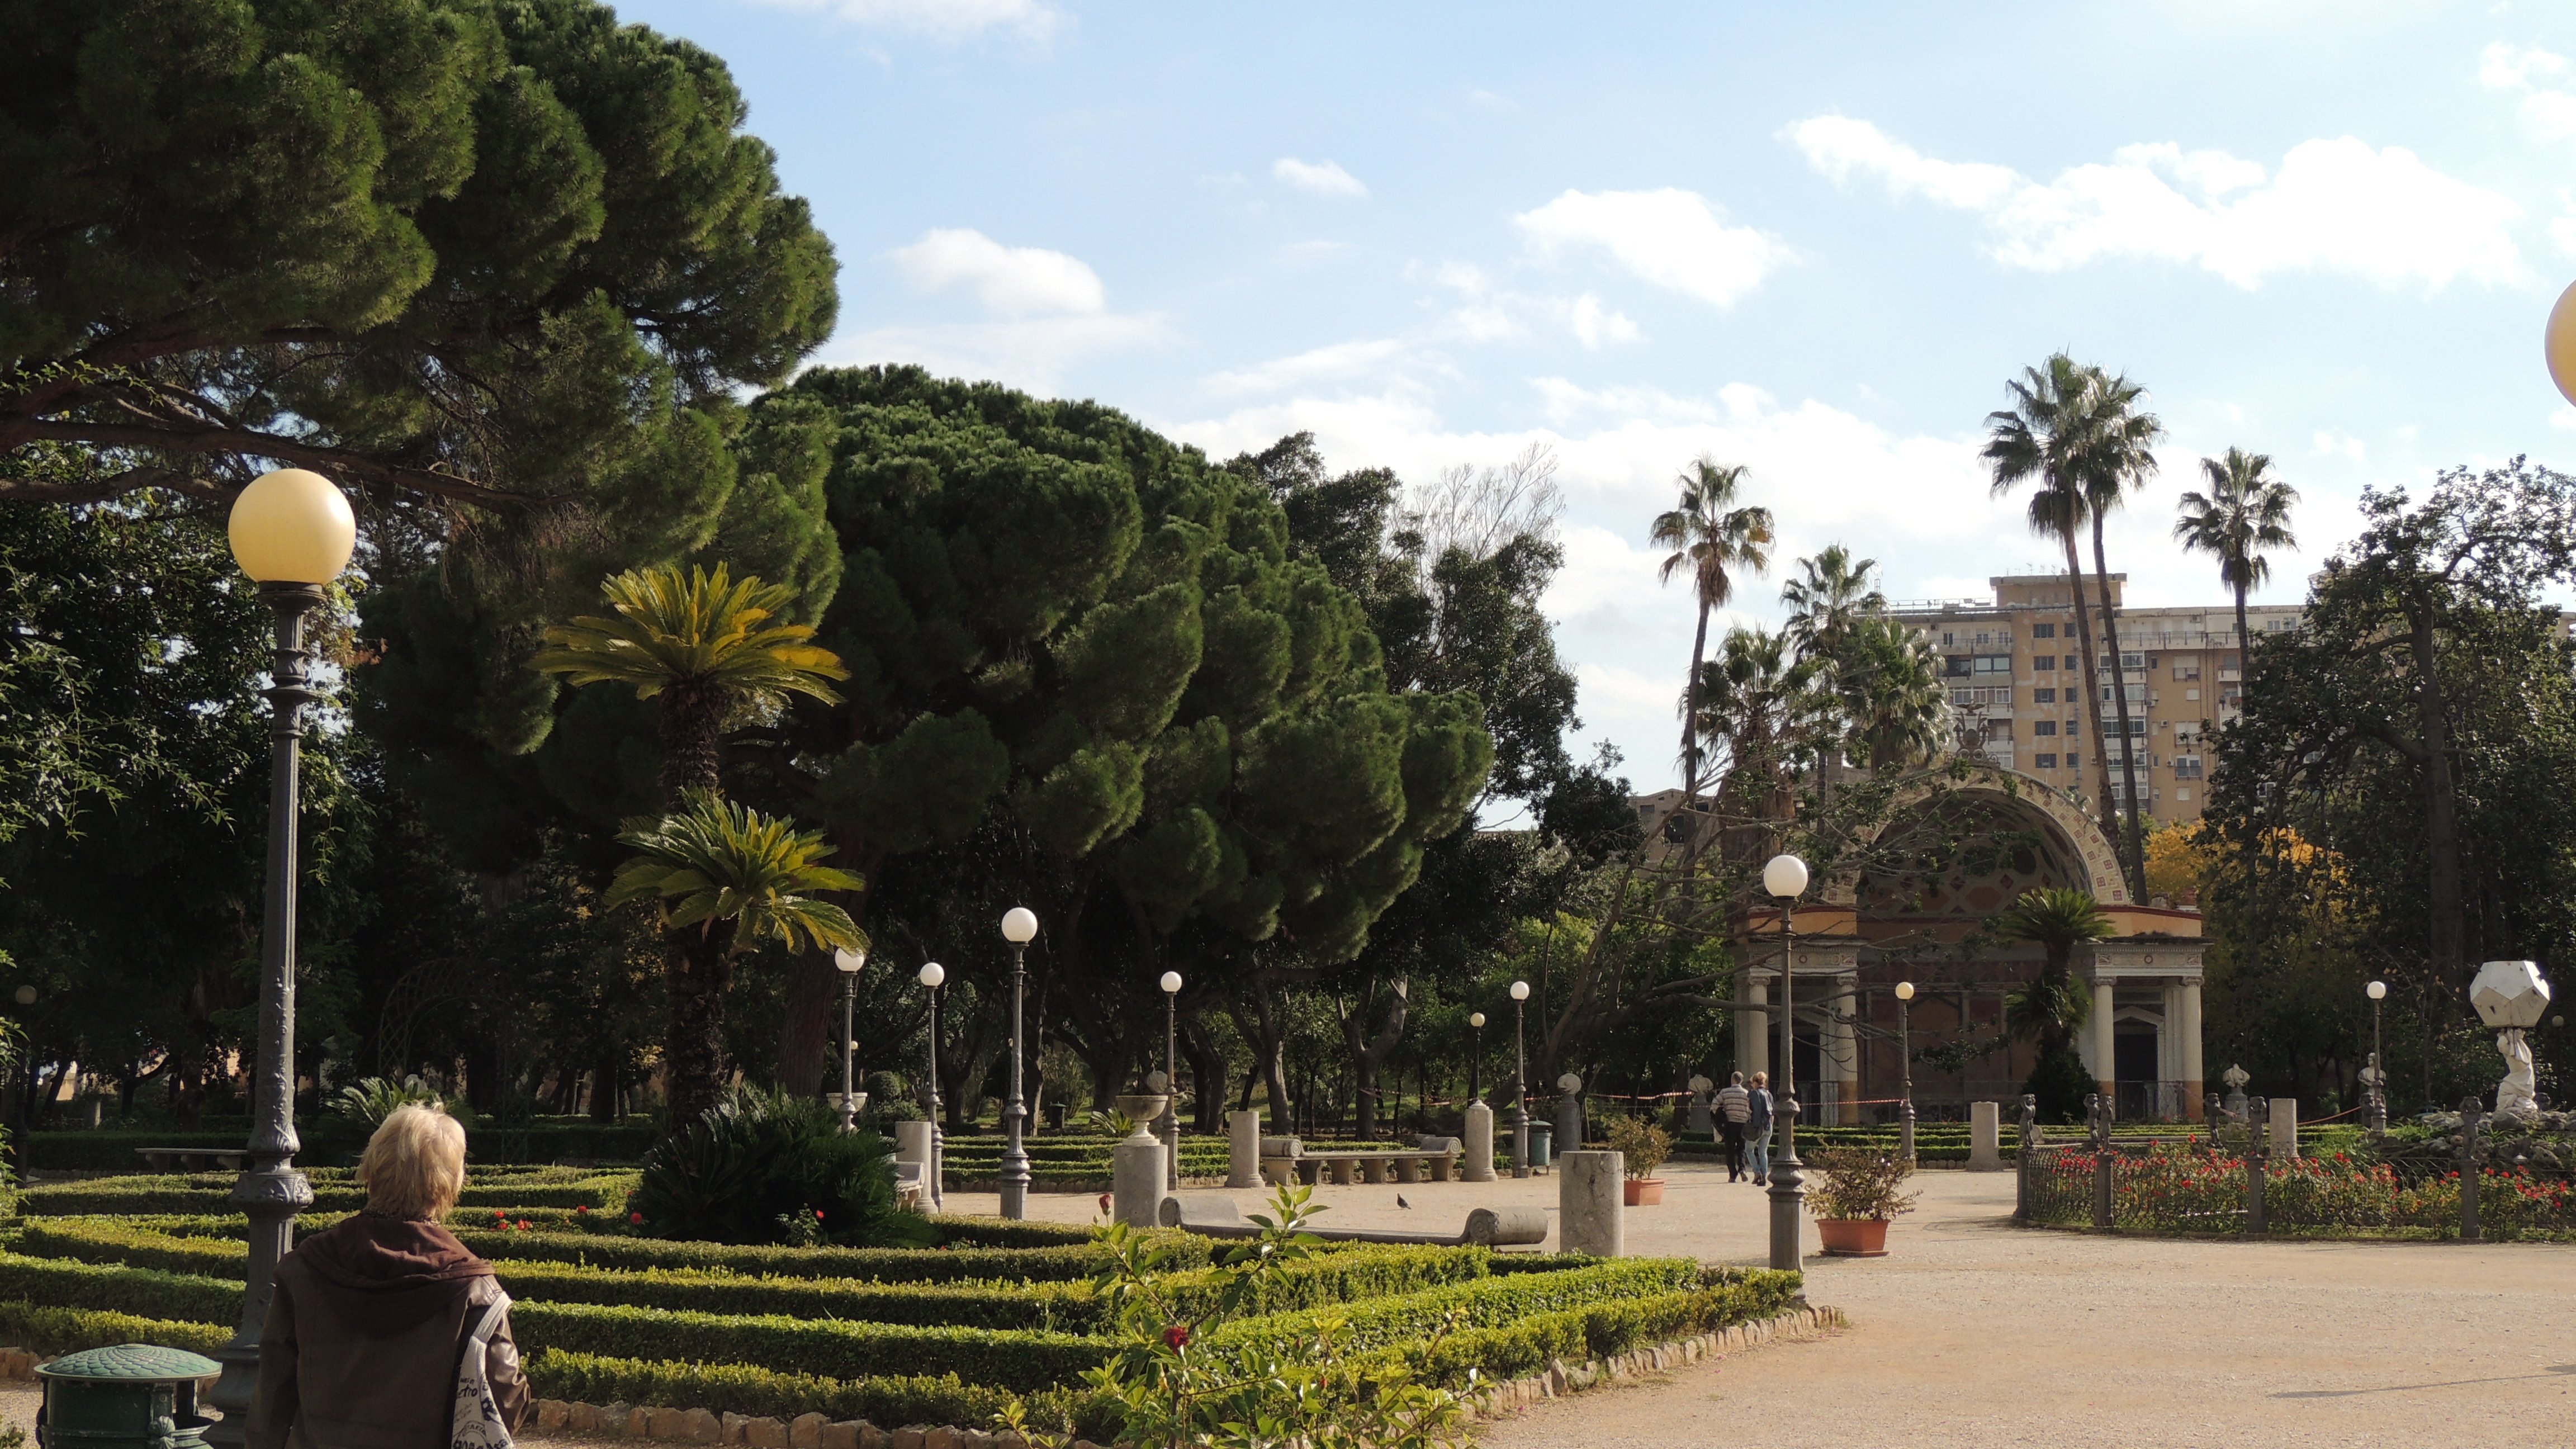 Botanischer Garten in Palermo - Fotos kostenlos, free pictures